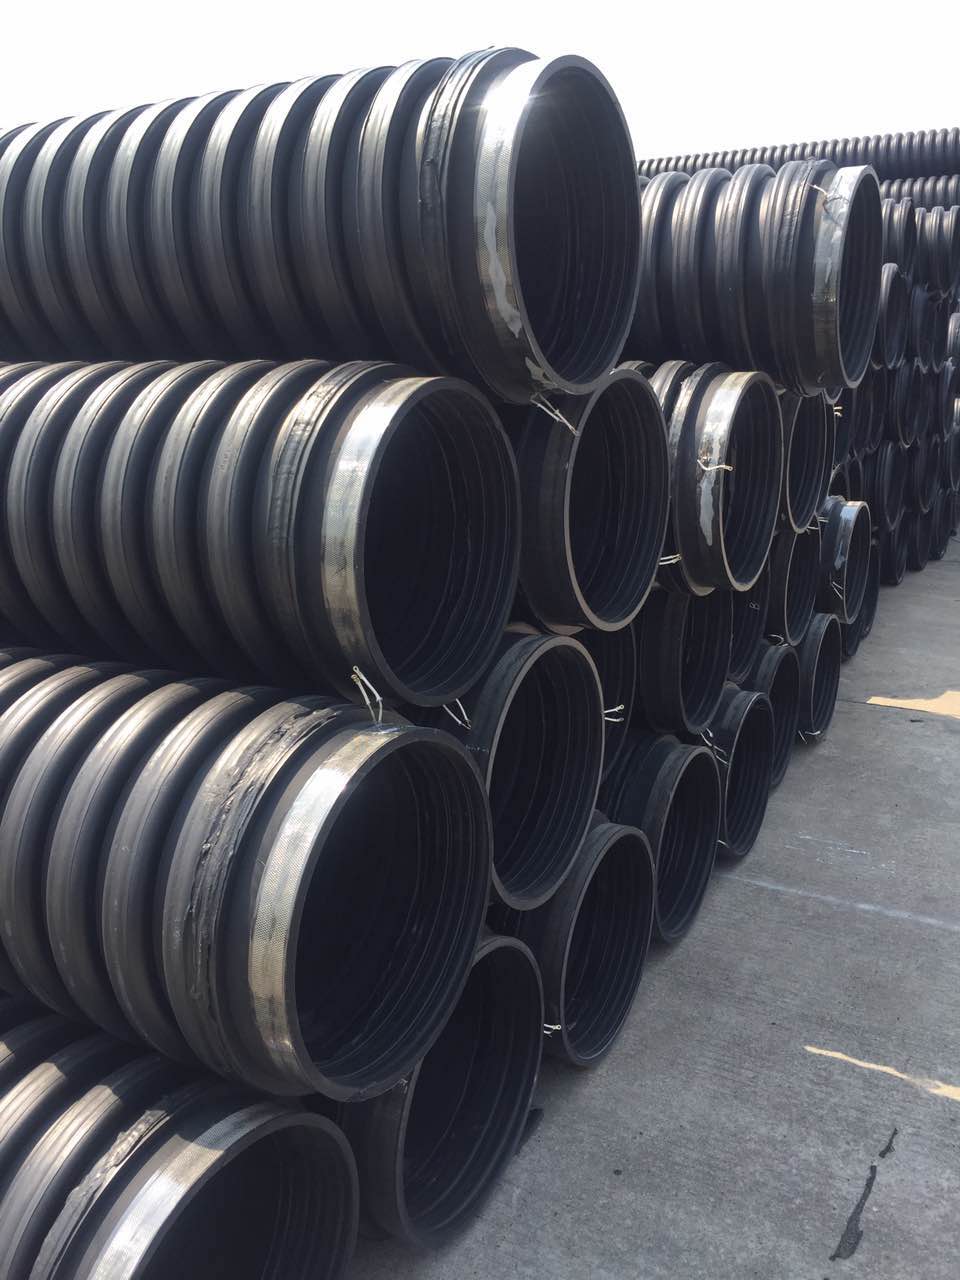 克拉管 克拉管厂家 2017克拉管价格 高密度聚乙烯缠绕管